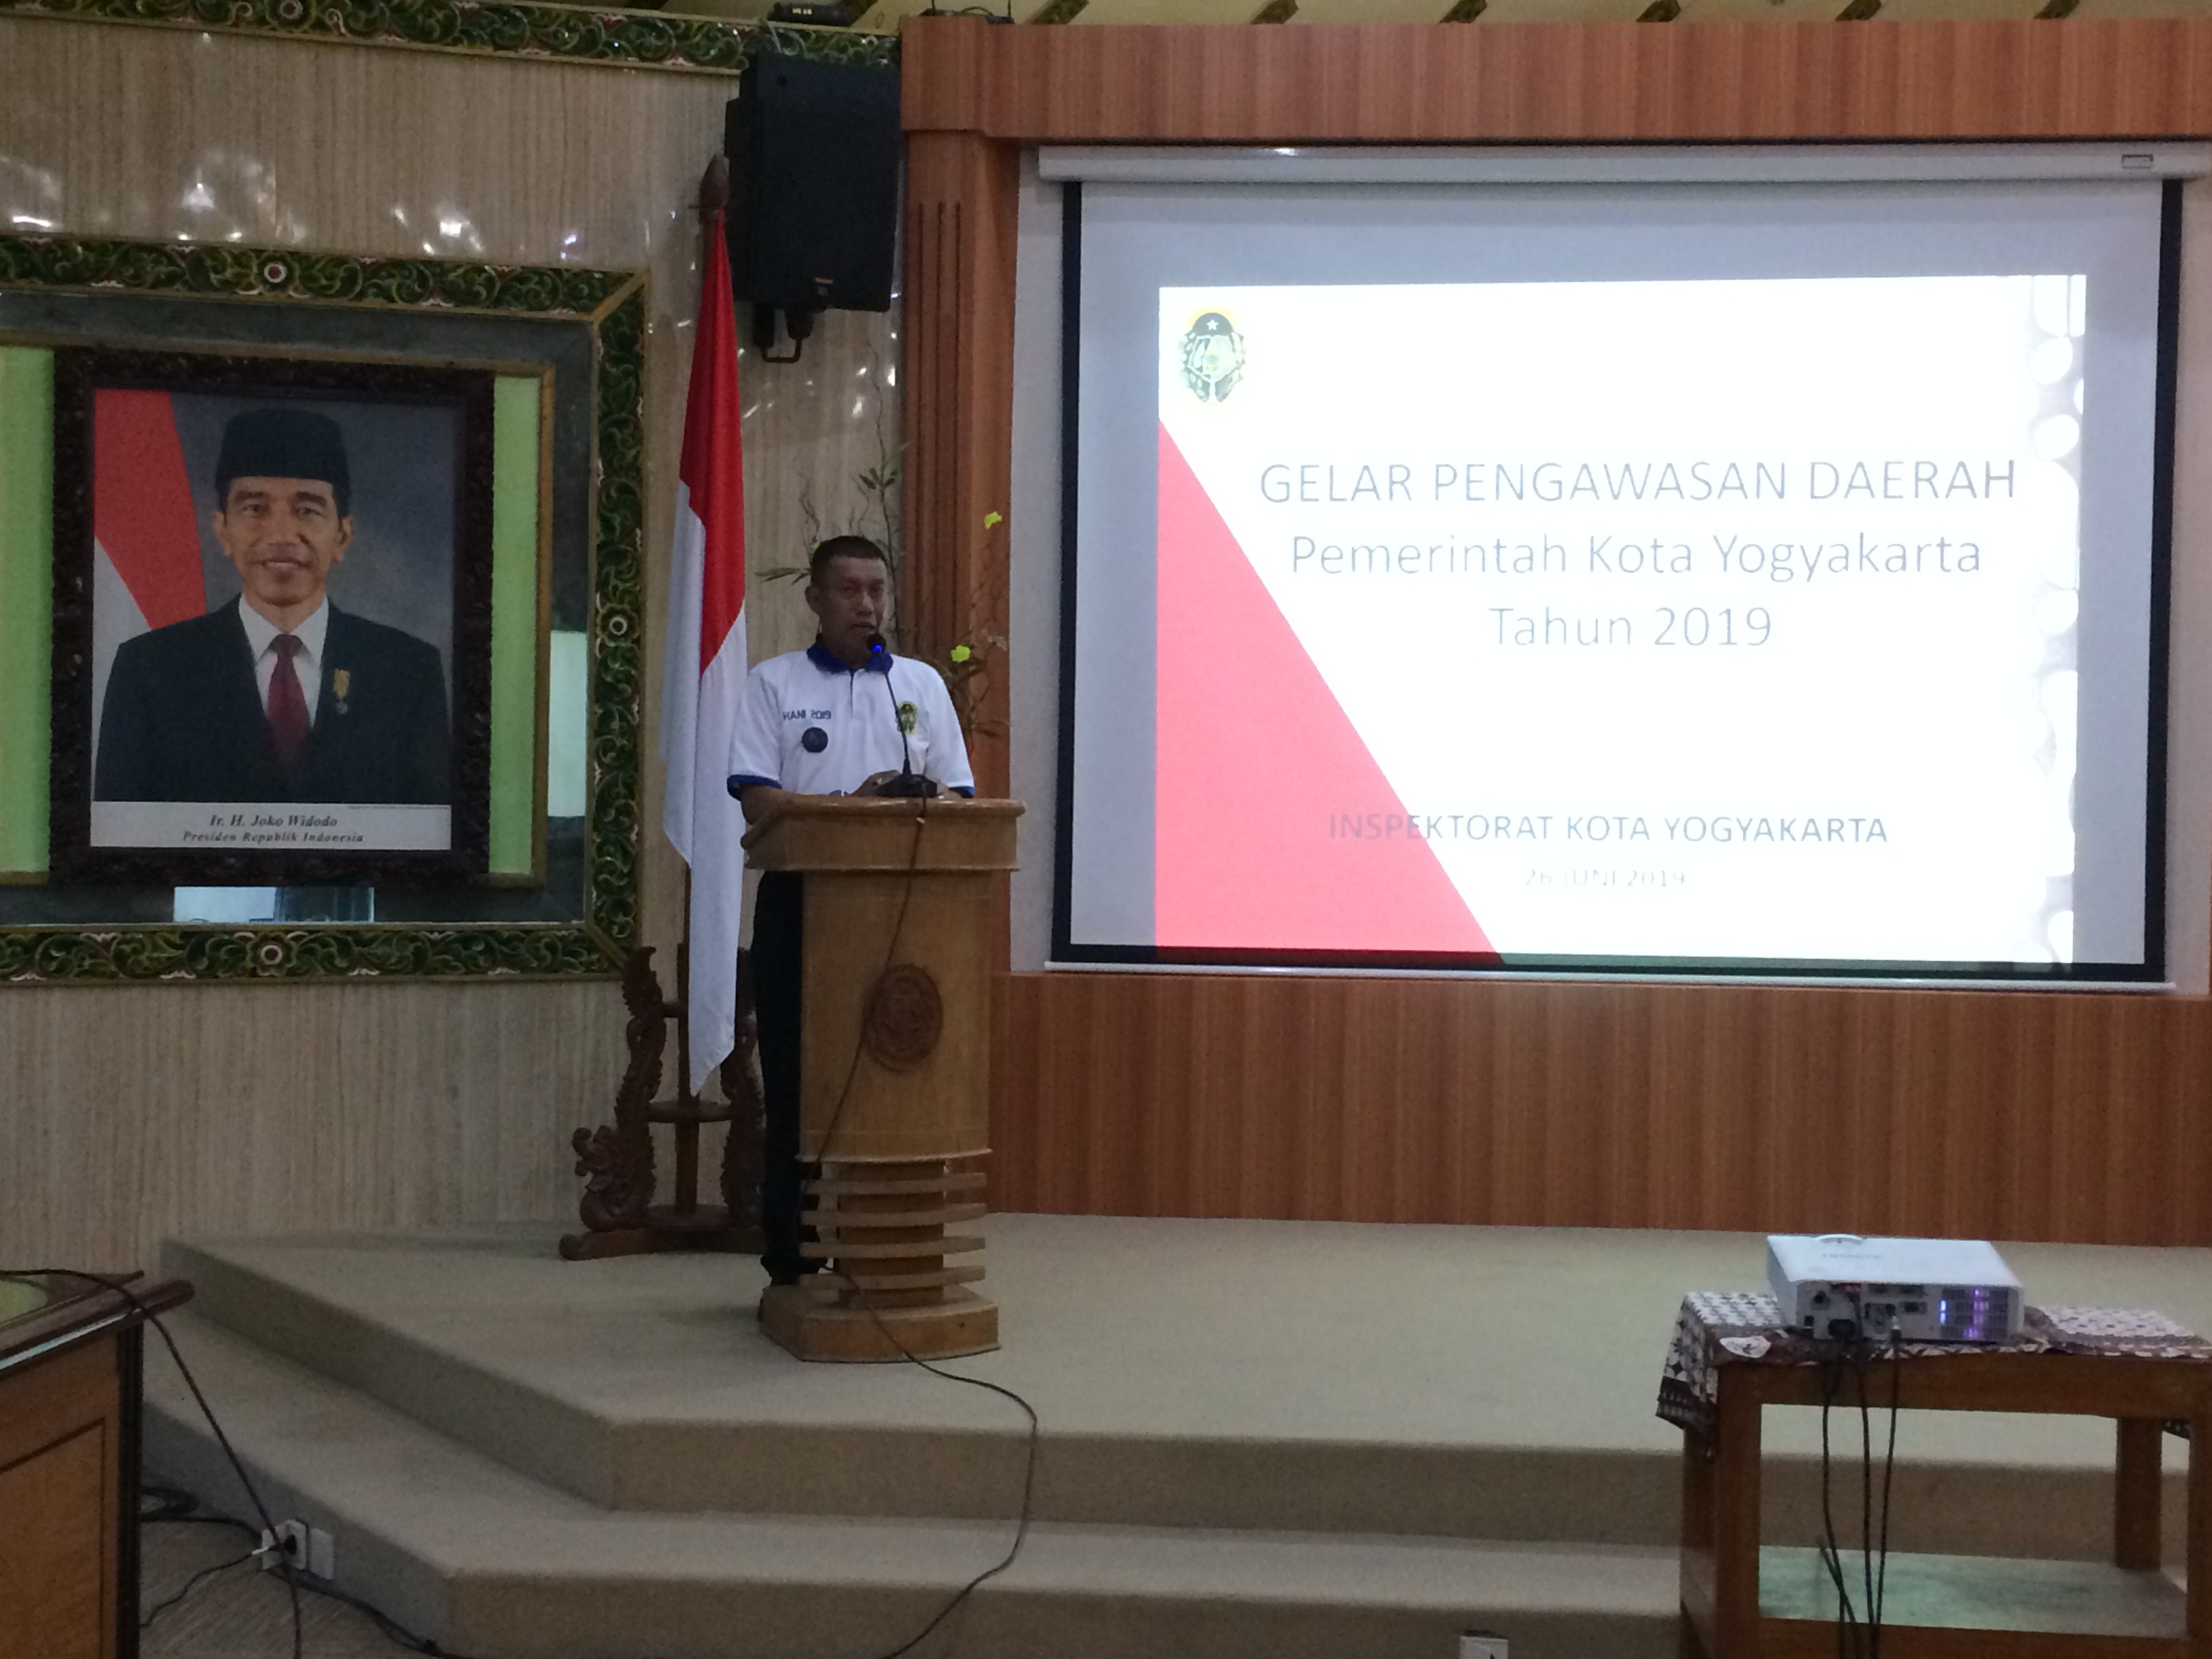 Gelar Pengawasan Daerah Pemerintah Kota Yogyakarta 2019